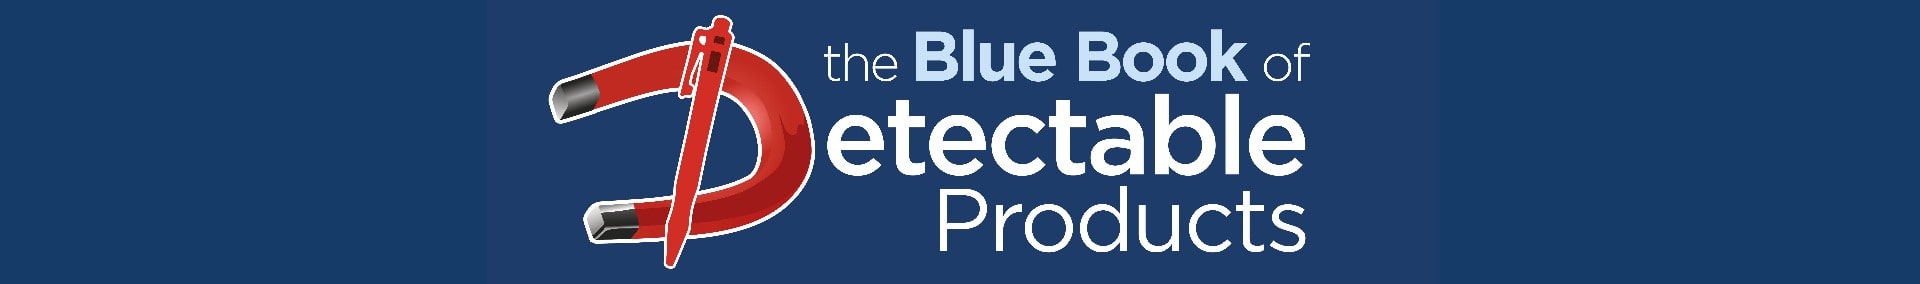 Le livre bleu des produits détectables - Catalogue de produits Detectamet